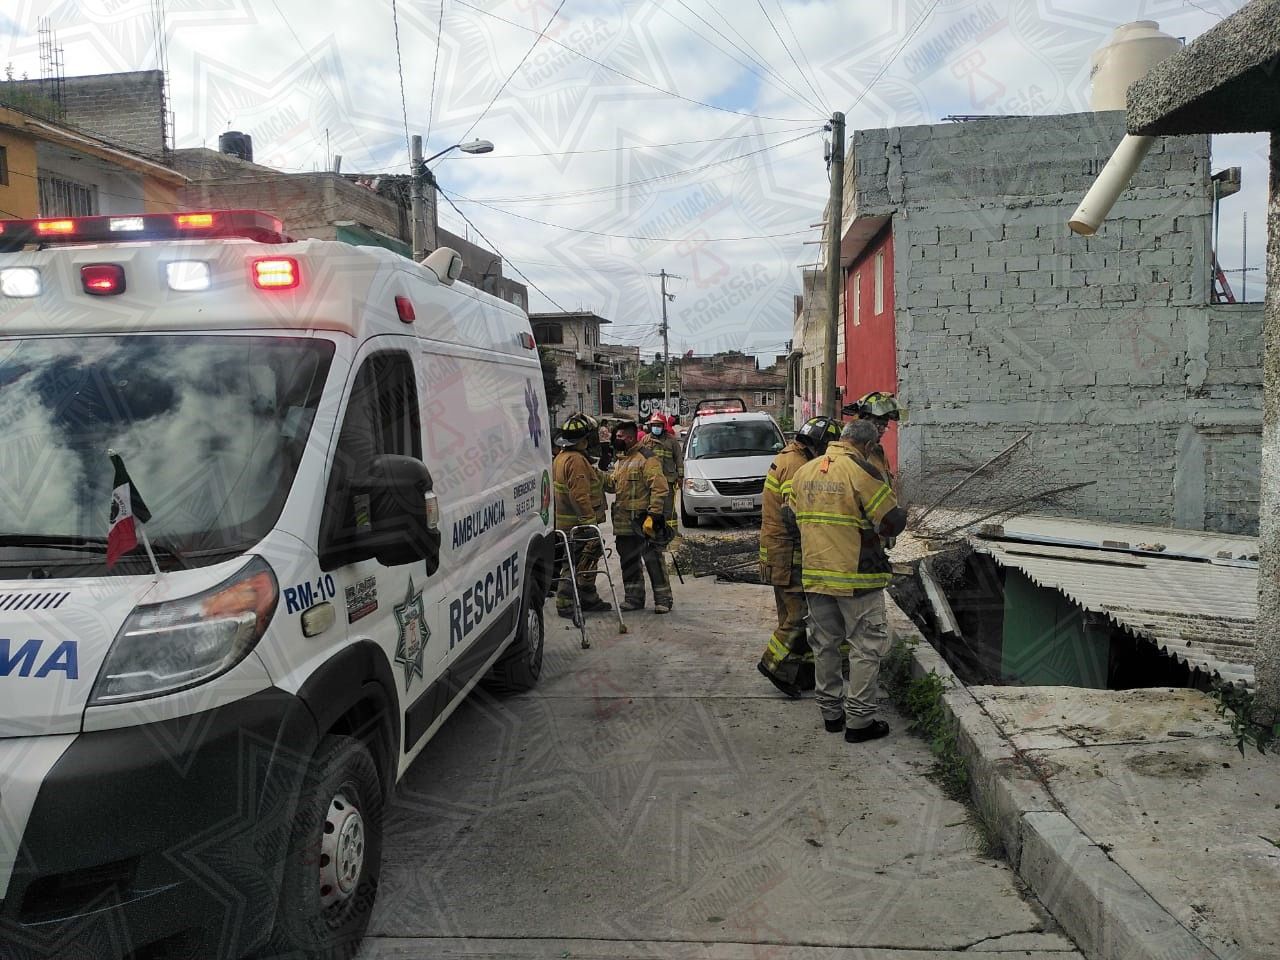 
Policía de Chimalhuacán rescata a dos personas por colapso de barda
